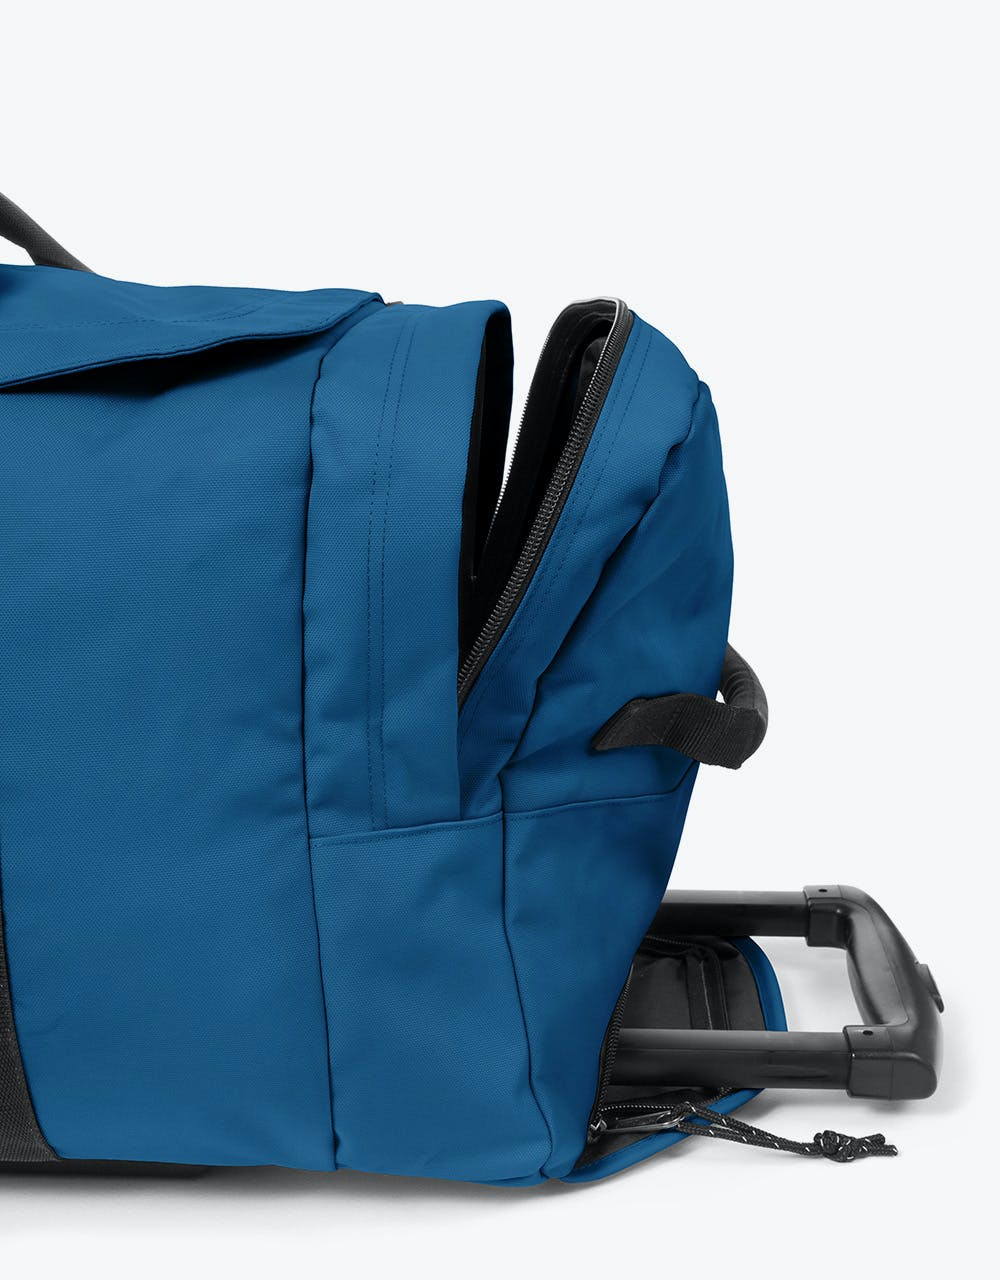 Eastpak Leatherface Medium Wheeled Luggage Bag - Urban Blue